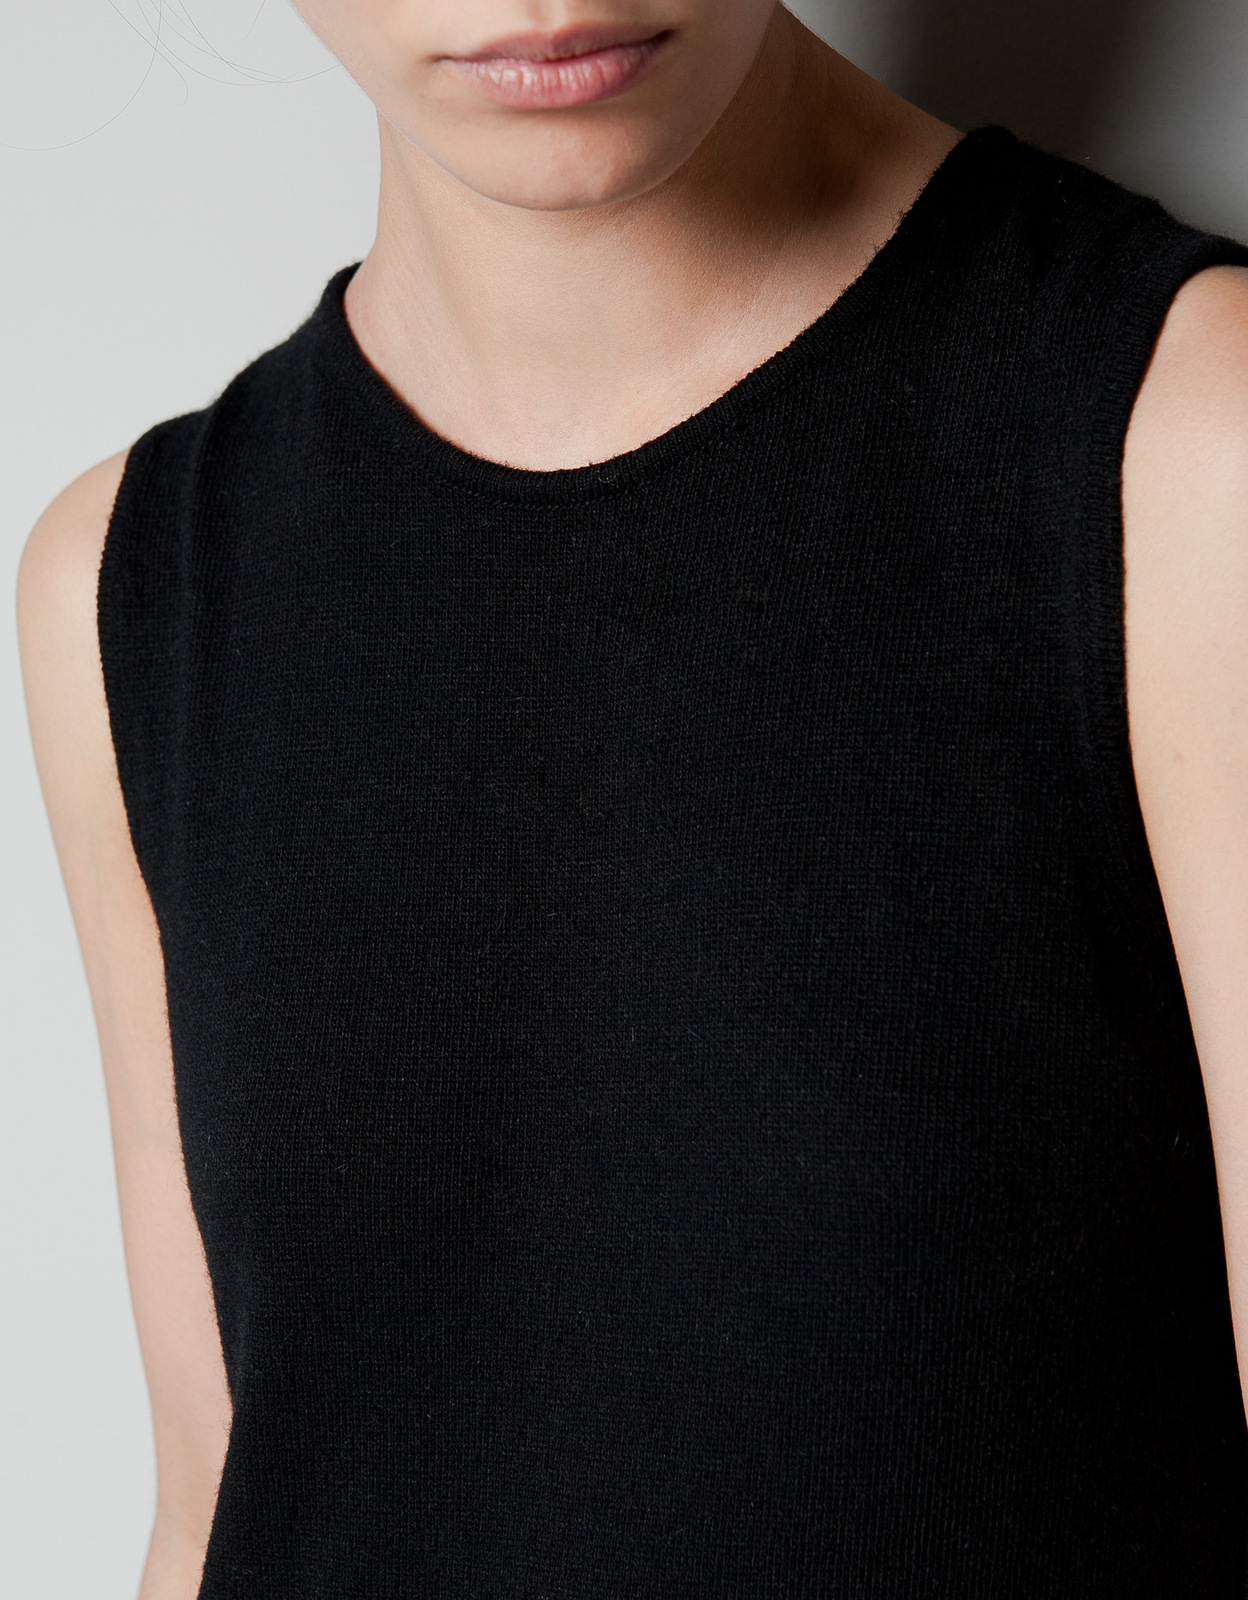 Zara fekete ujjatlan ruha 2012.10.21 fotója